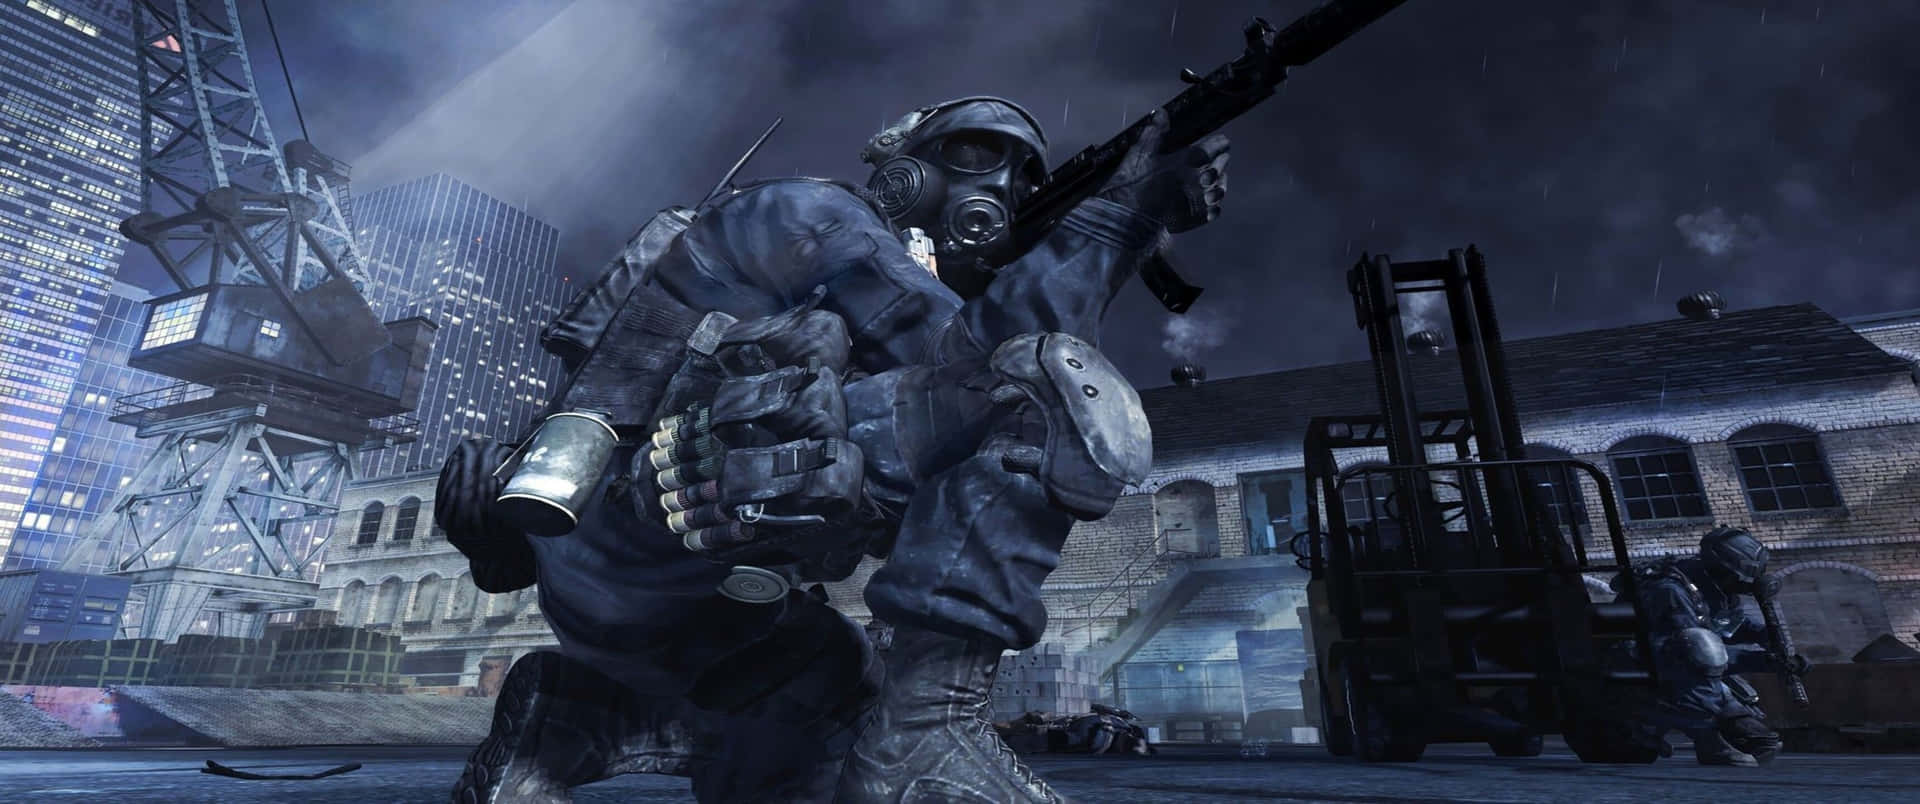 Soldatsom Knäböjer 3440x1440p Bakgrund För Call Of Duty Modern Warfare.